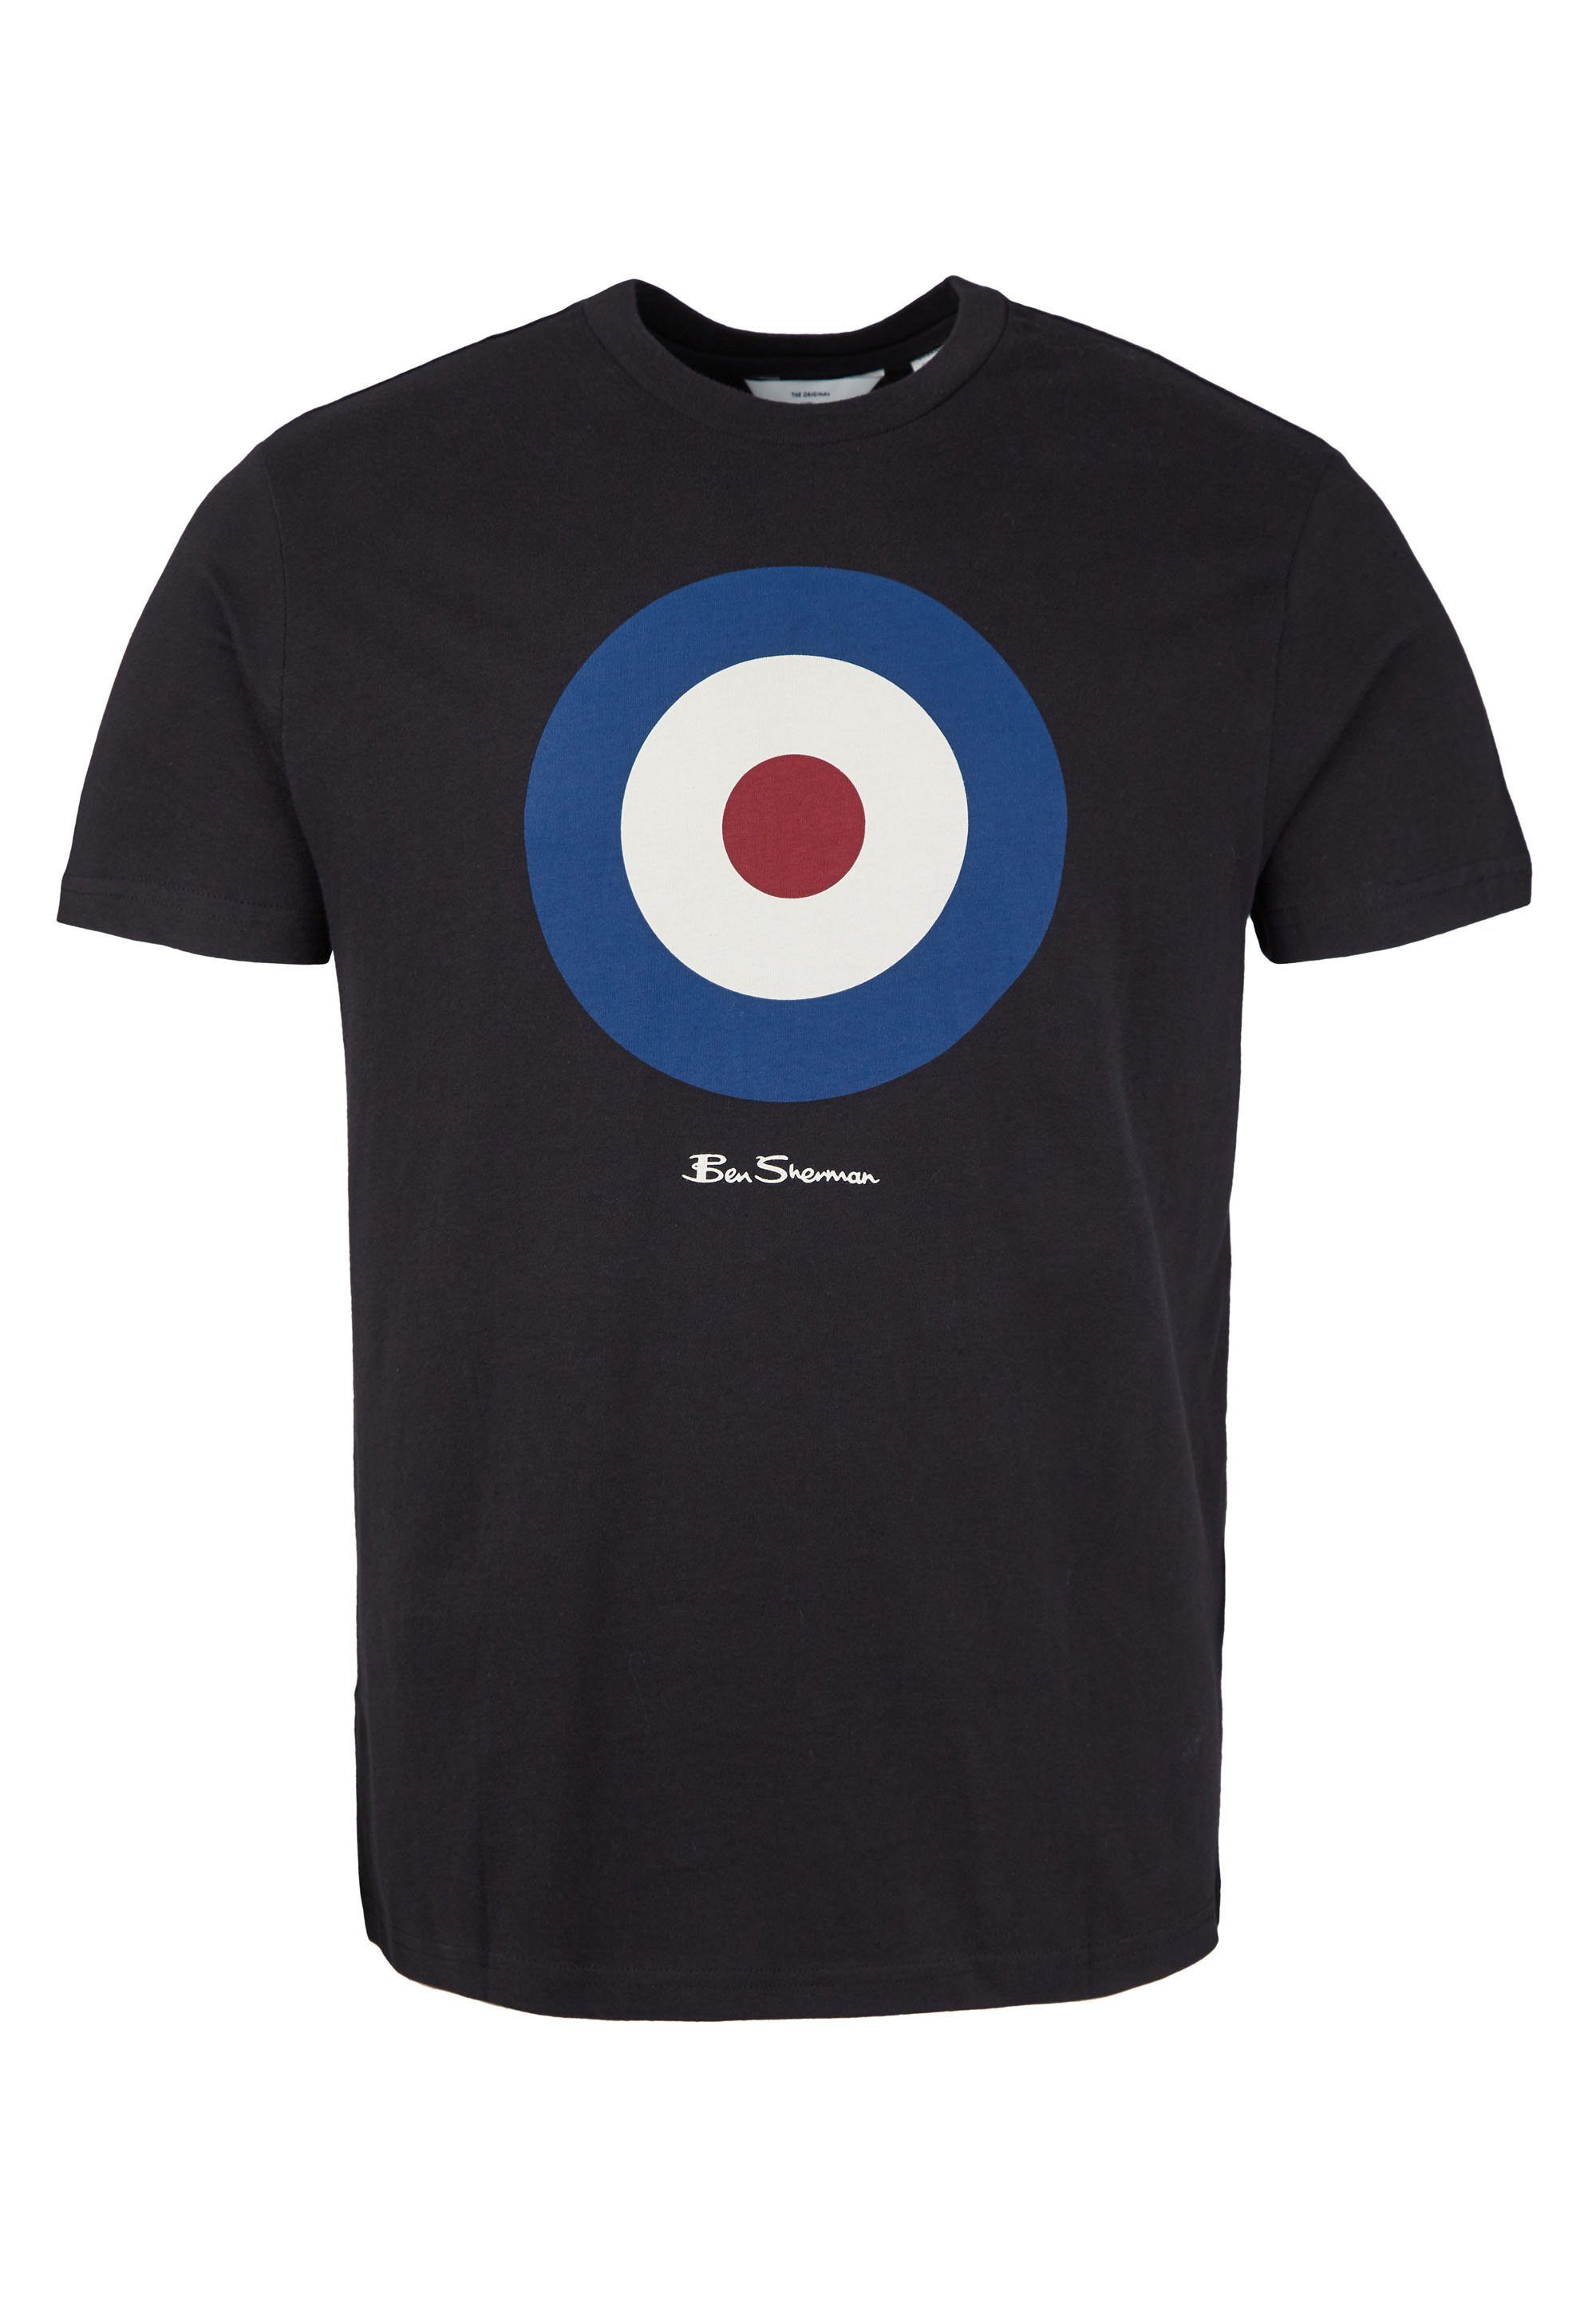 Ben Sherman T-Shirt Signature Grafisch Tee Target bedrucktes schwarz T-Shirt